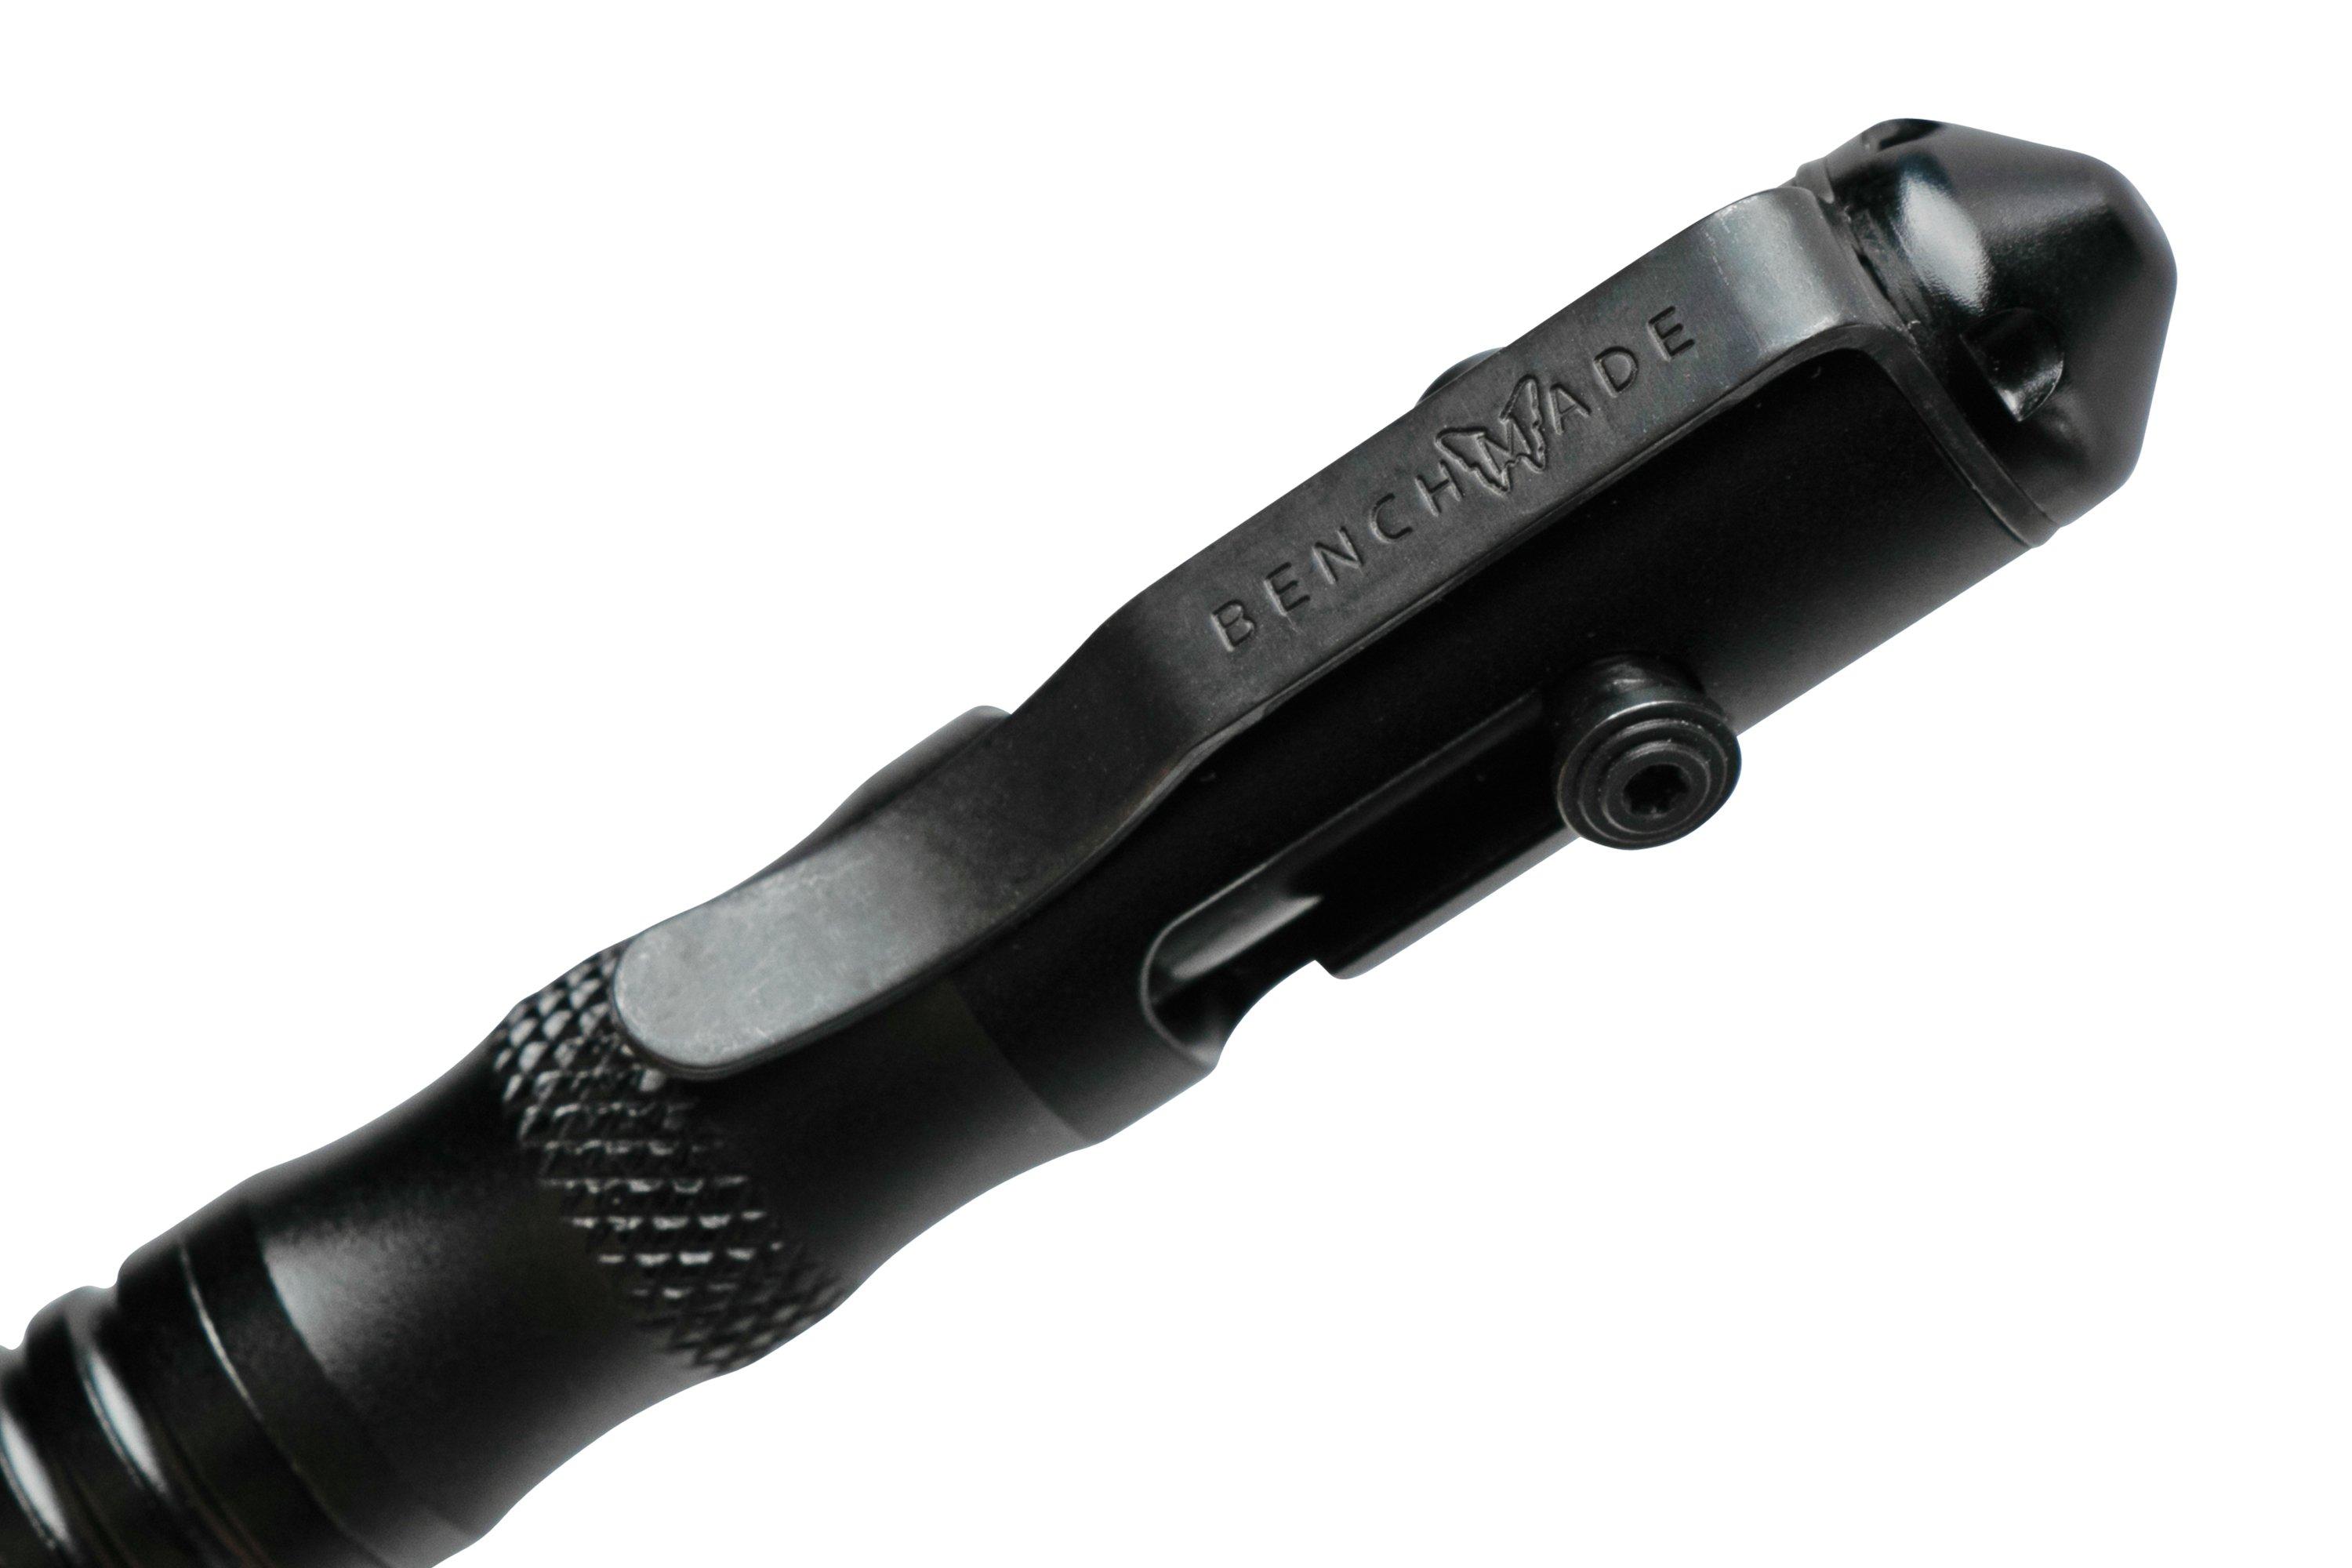 Benchmade - Tactical Pen Shorthand - Aluminio - 1121-1 - boligrafo tactico